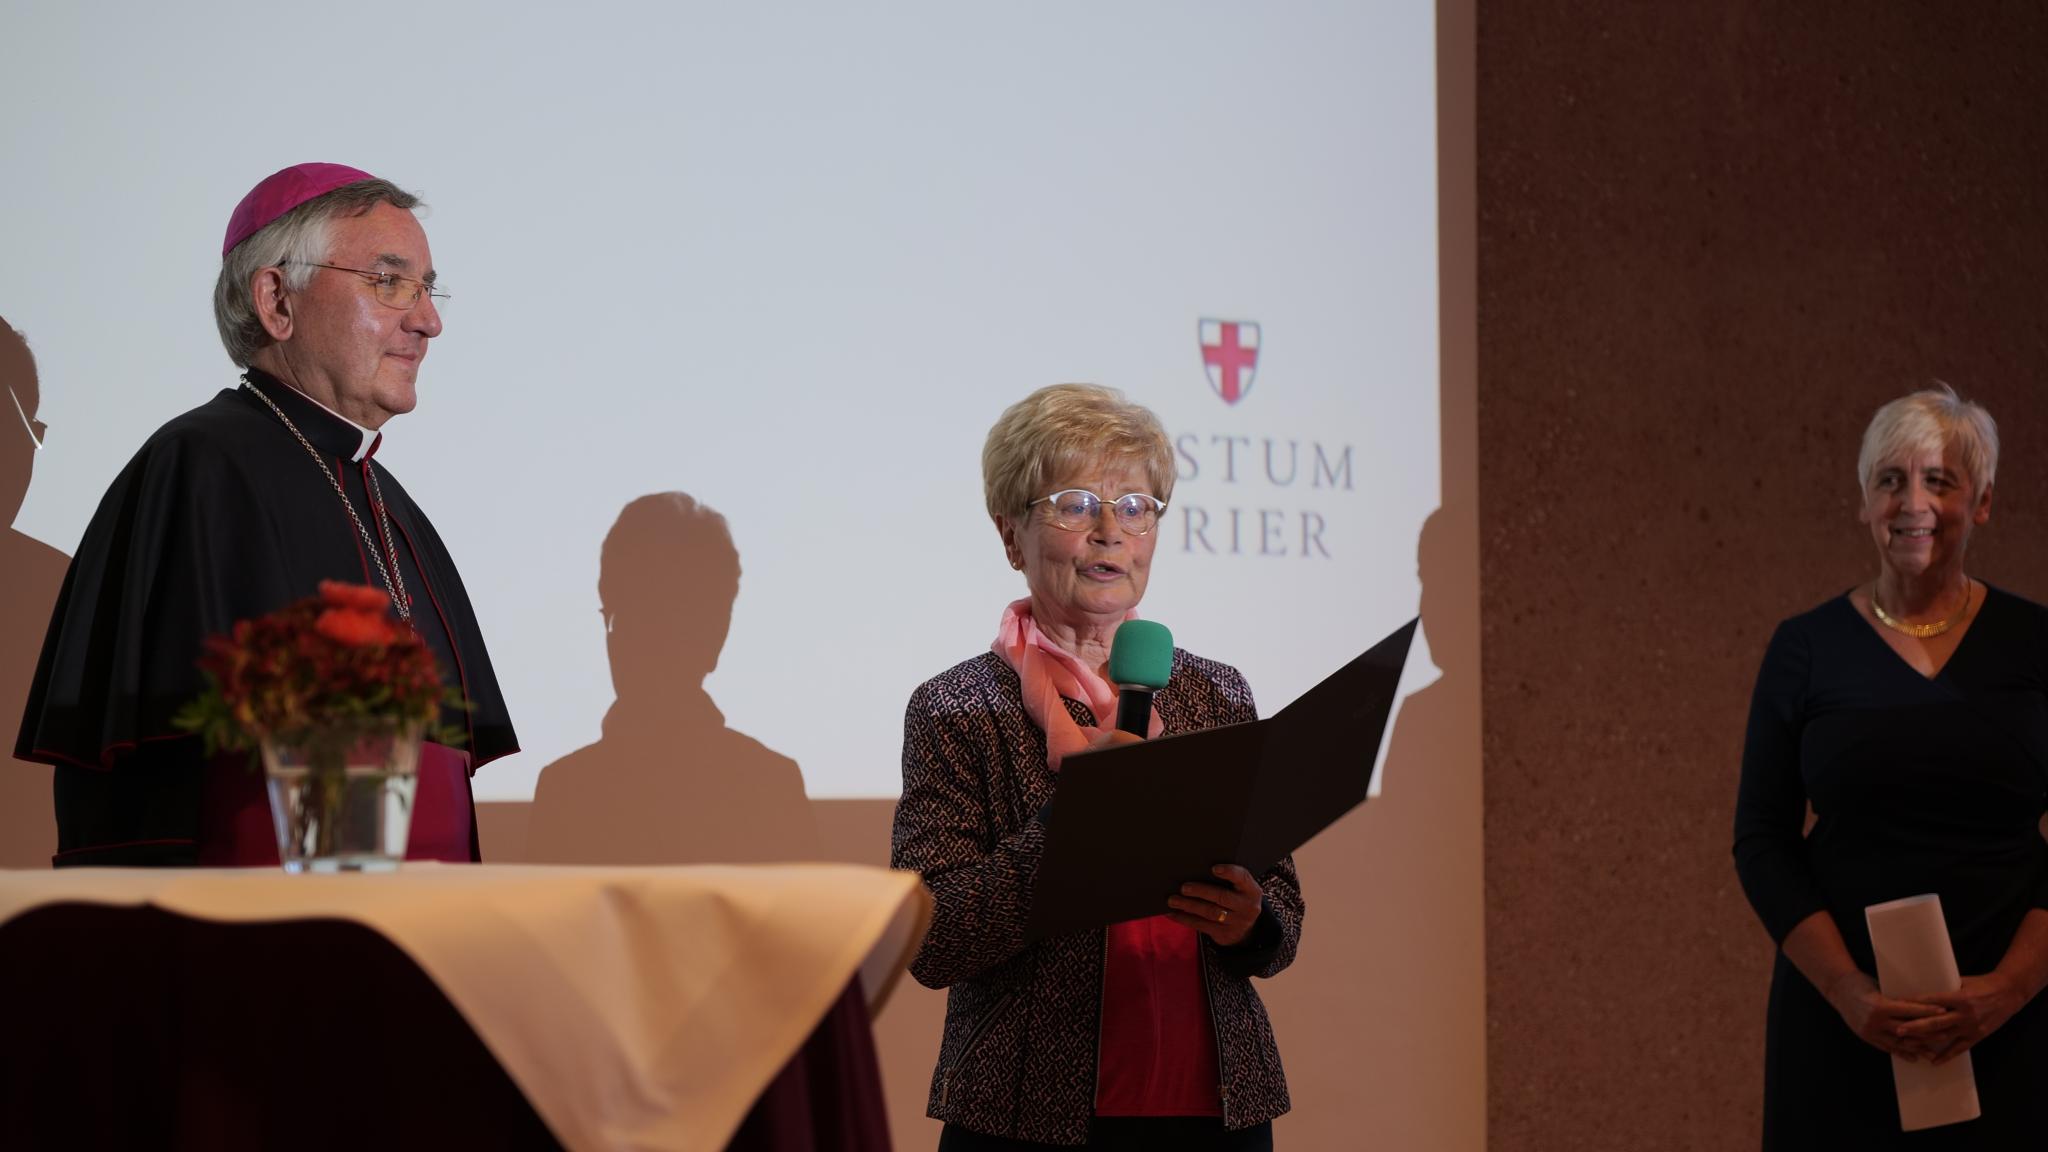 Marianne Mautes empfing die Dankesurkunde für besondere Verdienste im ehrenamtlichen Engagement; links Weihbischof Franz Josef Gebert